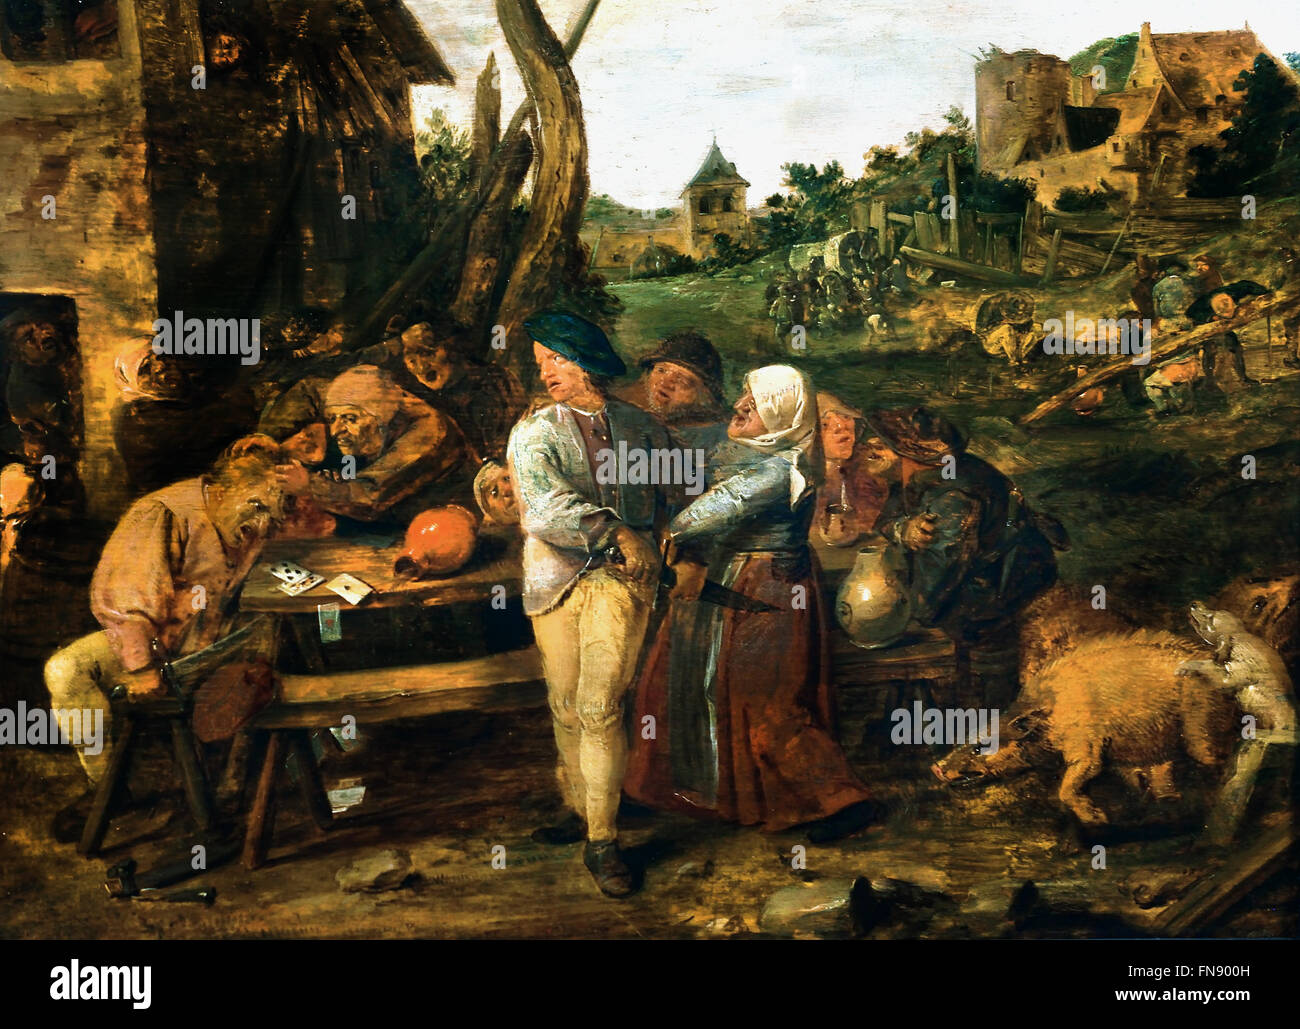 Keifen betrunkenen Bauern 1634 Adriaen Brouwer (1605 – 1638) flämischen niederländischen Malers siebzehnten Jahrhundert Niederlande Belgien Stockfoto